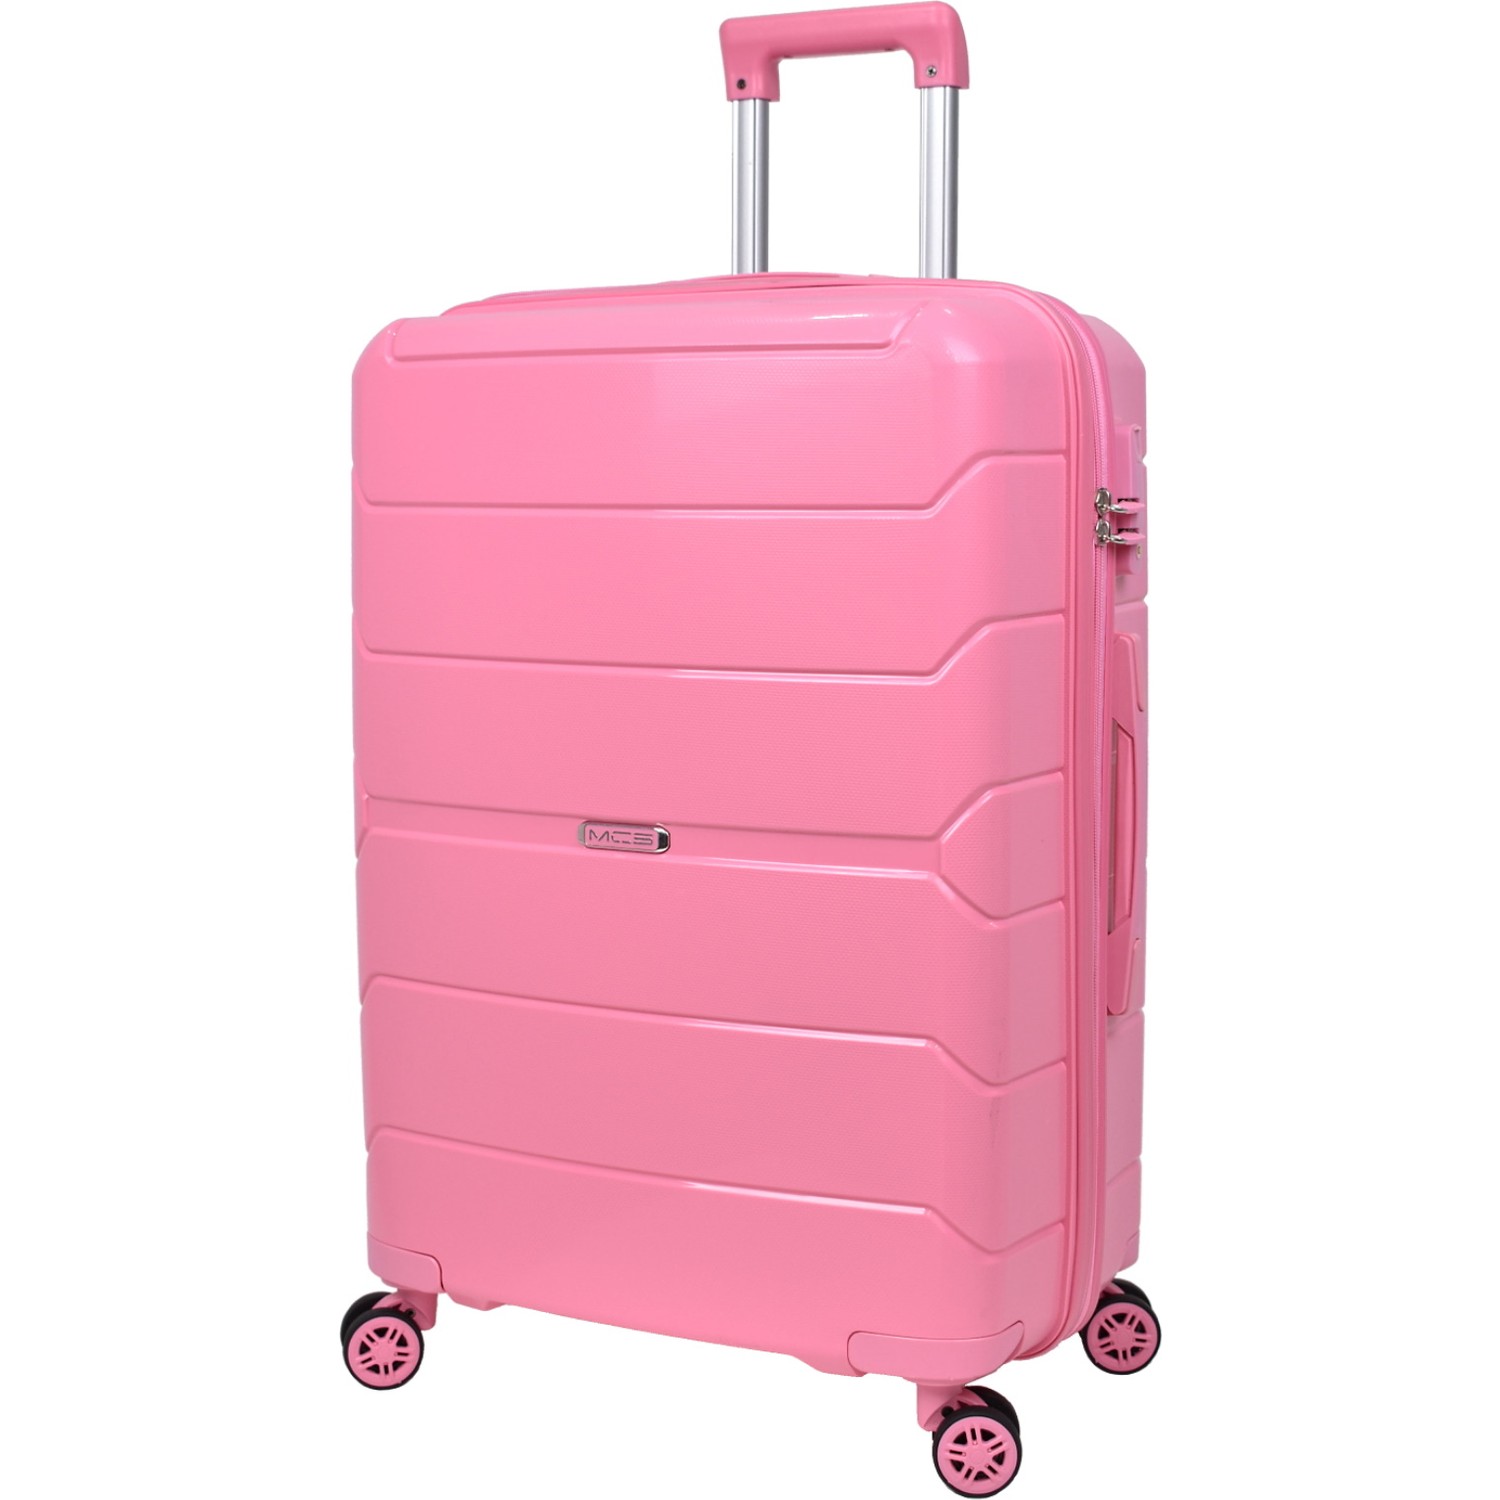 Средний чемодан из полипропилена MCS V366 M PINK! Для 18 кг! - 5